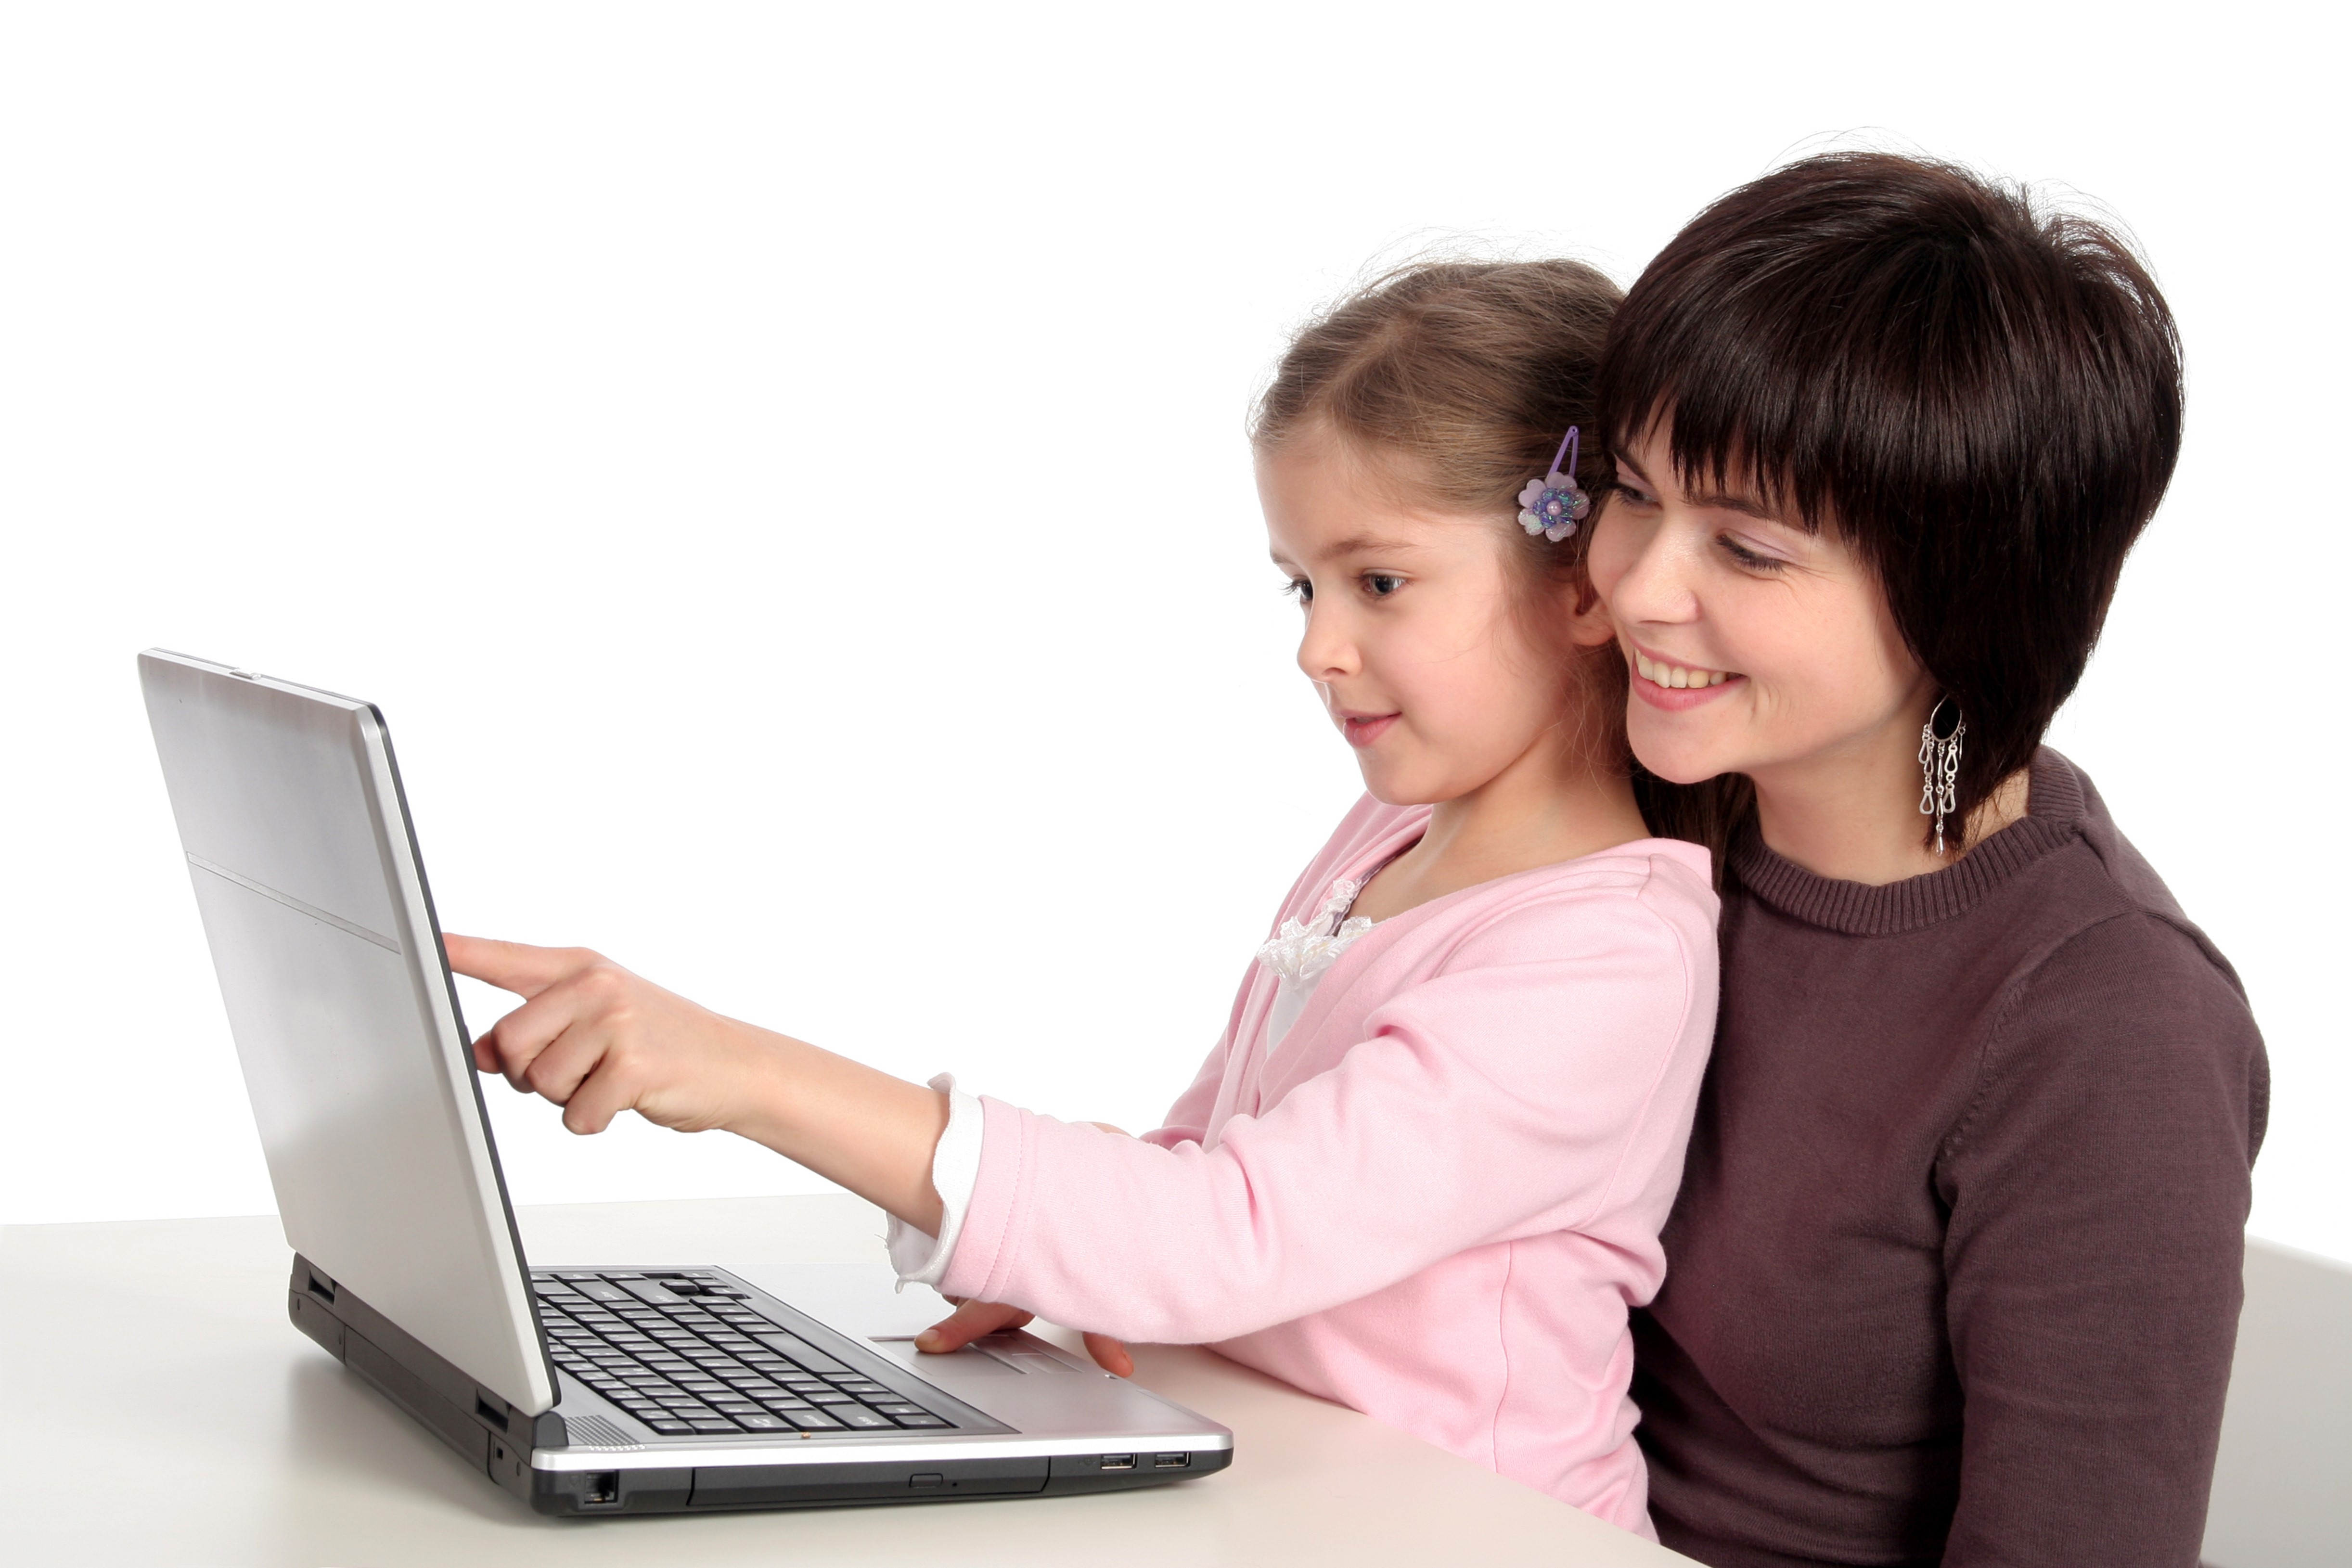 Безопасность общения в сети. Компьютер для детей. Детям об интернете. Ребенок за компьютером. Дети и взрослые в интернете.